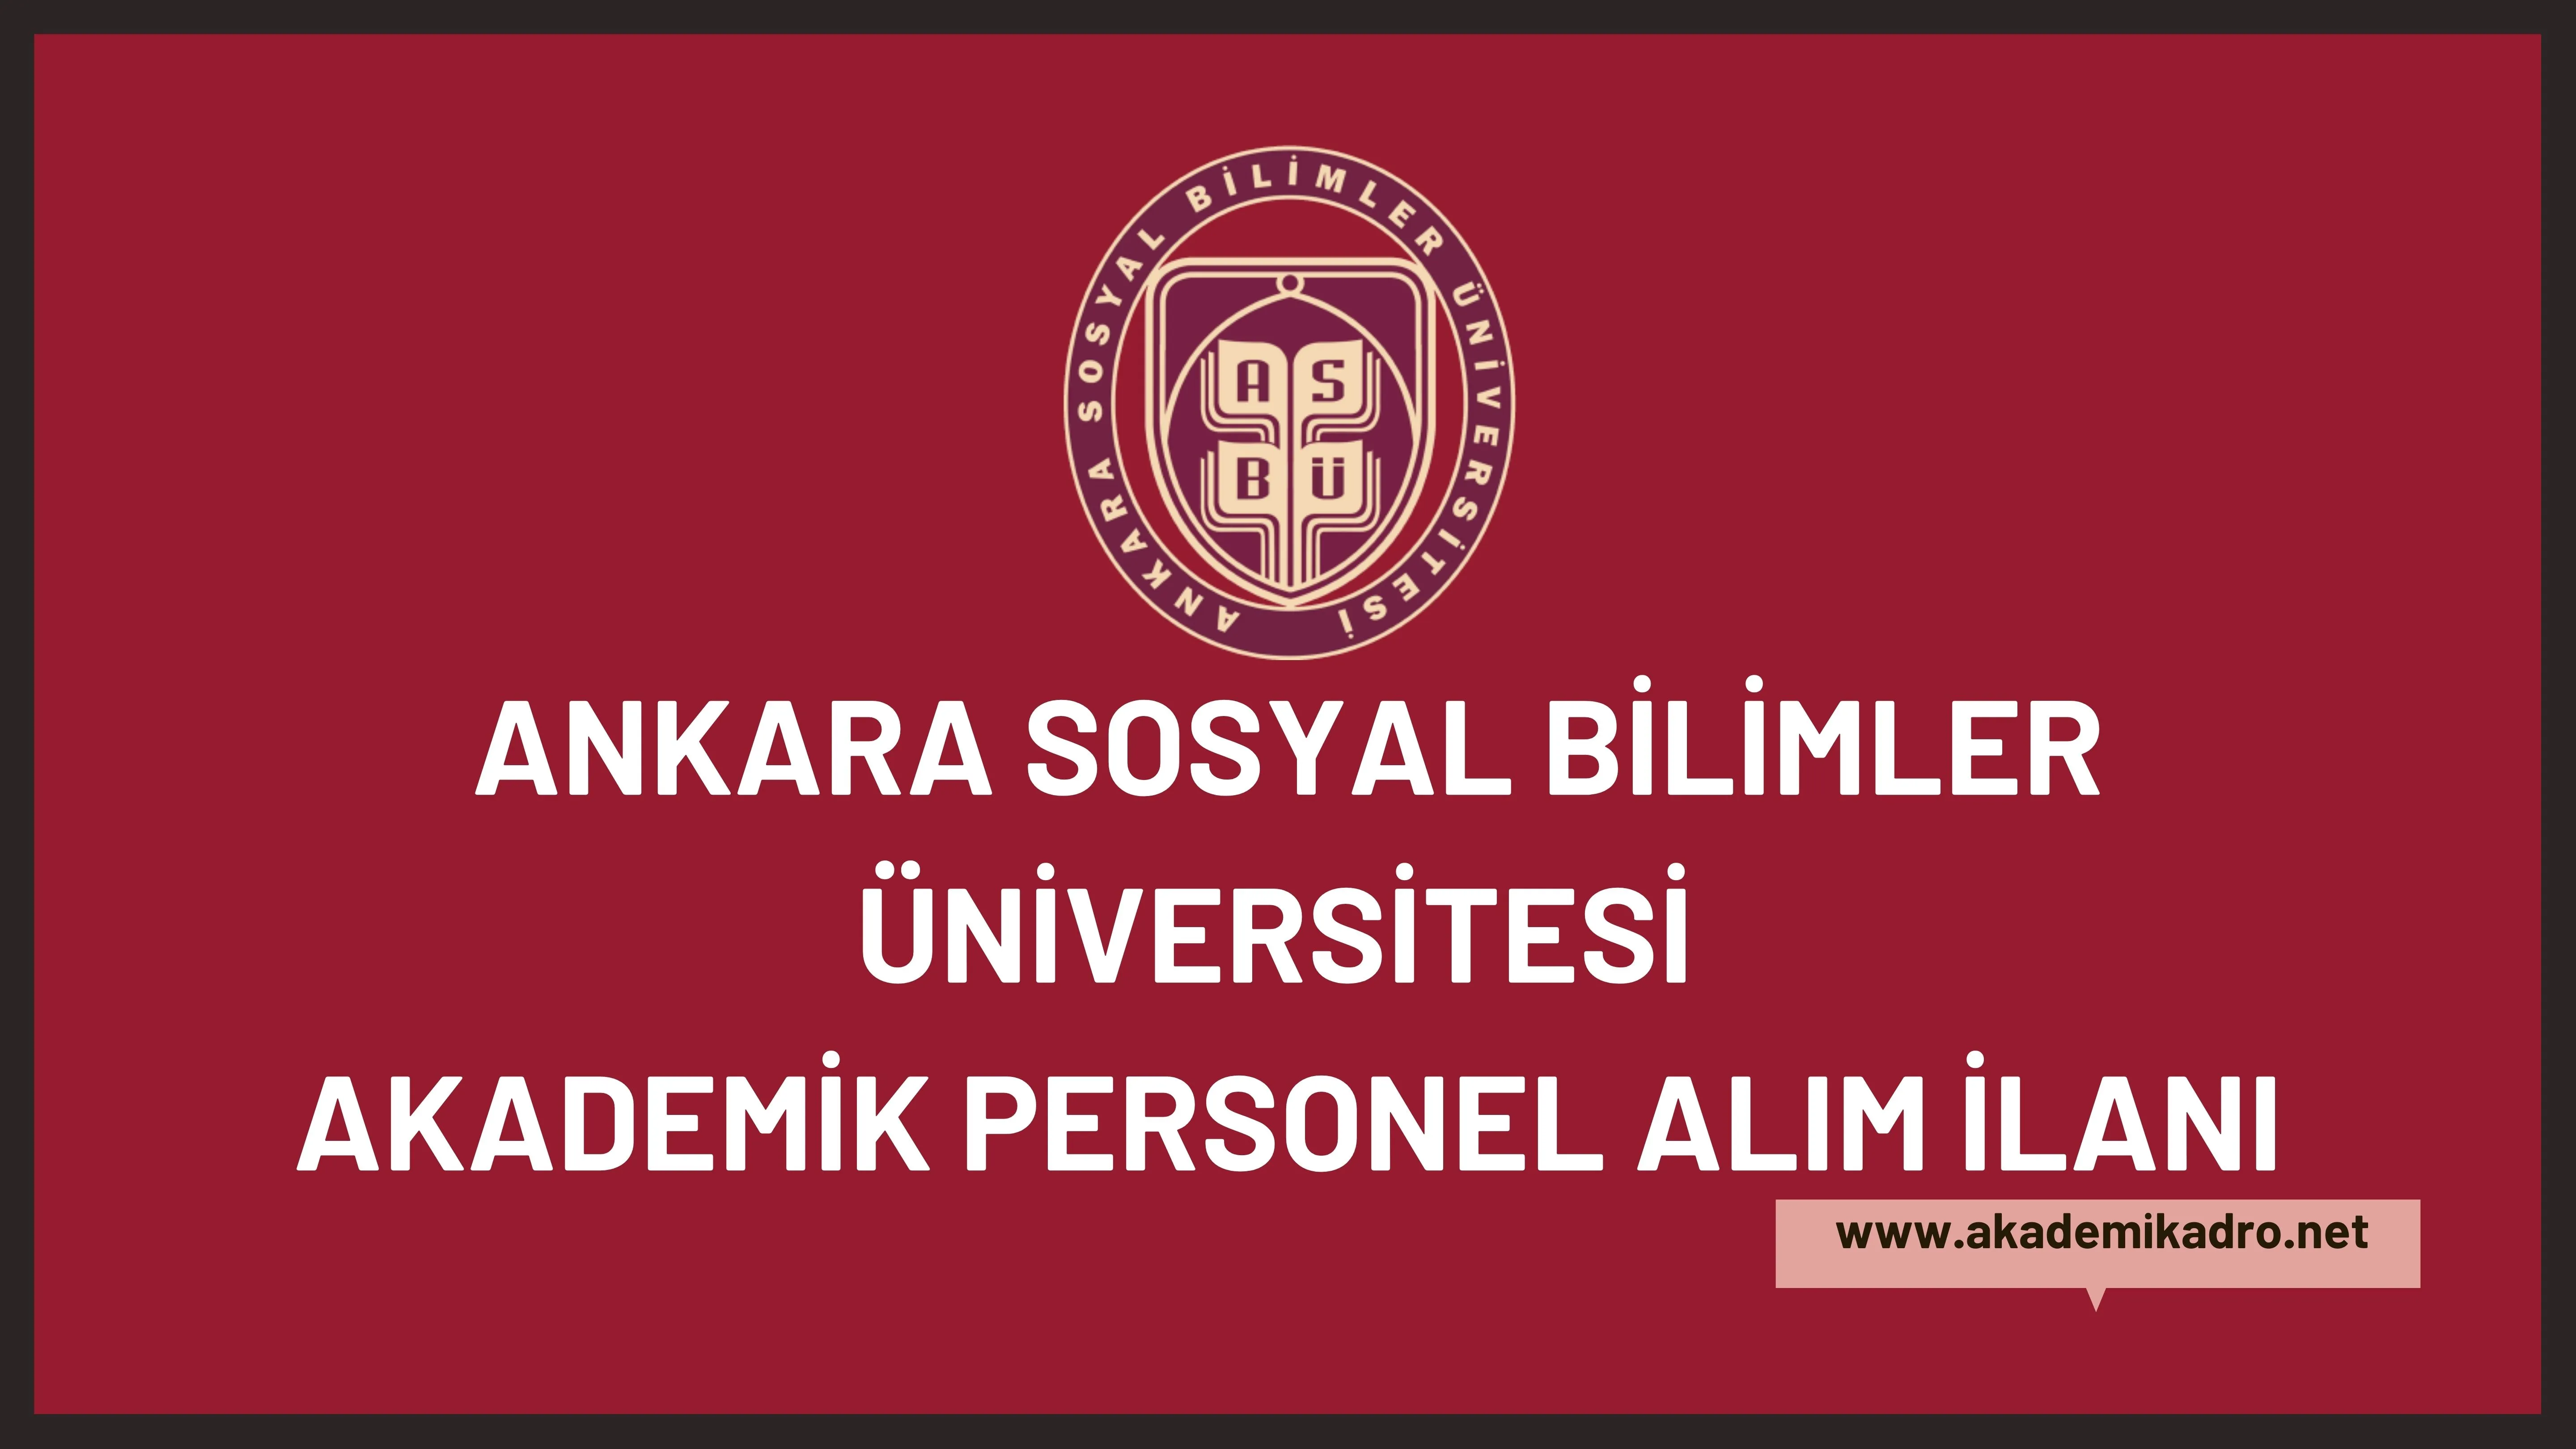 Ankara Sosyal Bilimler Üniversitesi birçok alandan 11 Akademik personel alacak.